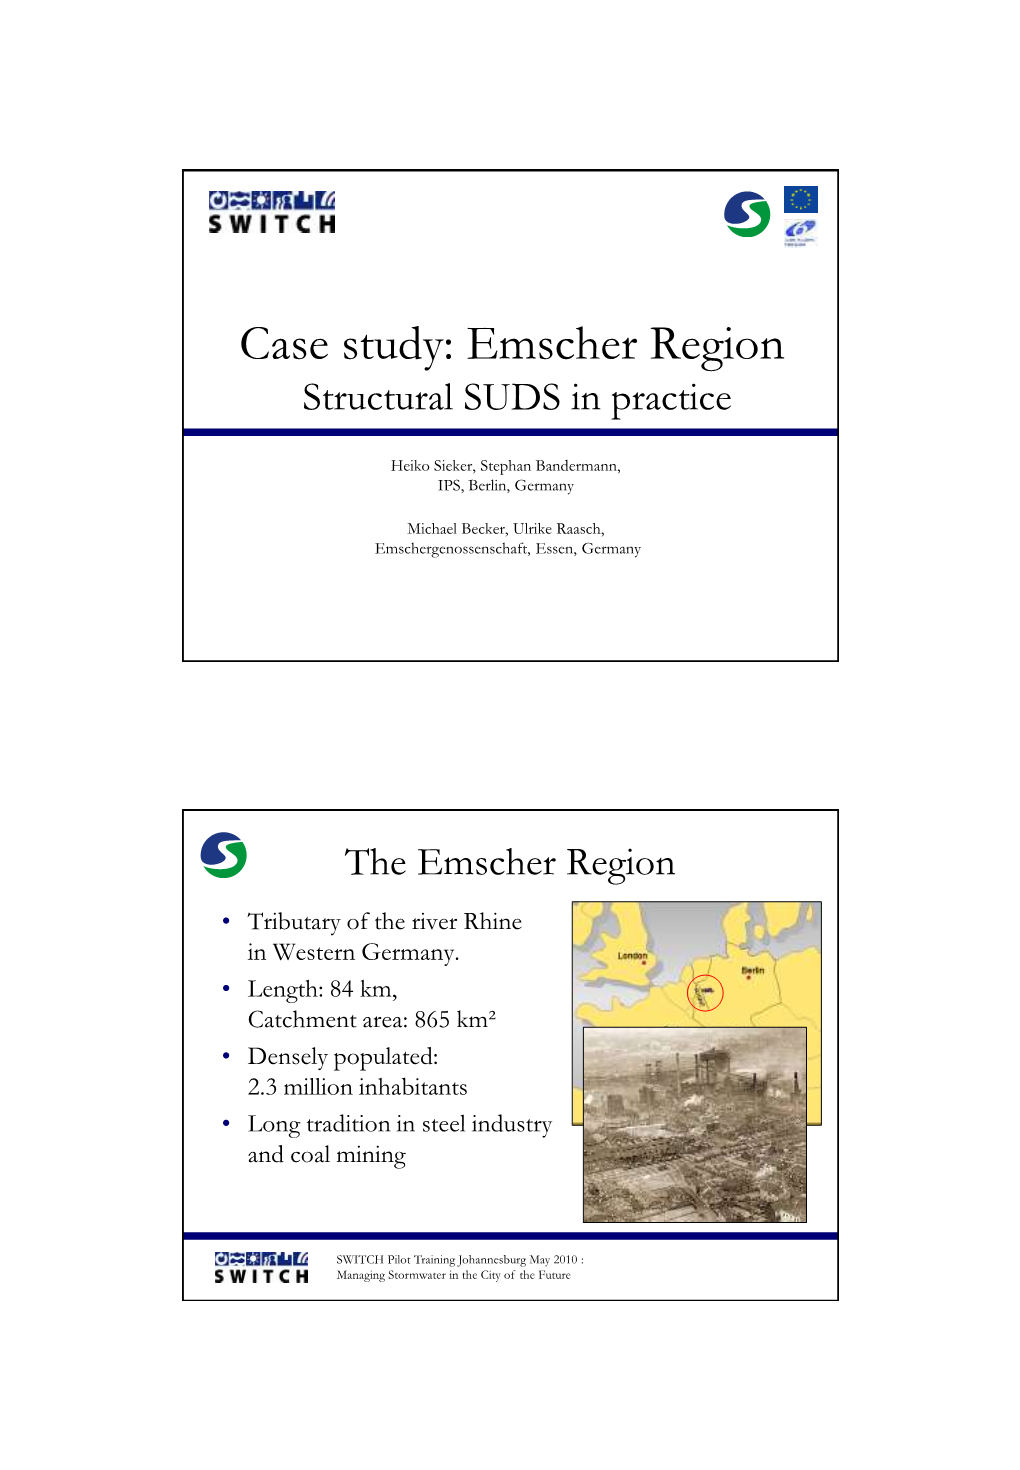 Emscher Region Structural SUDS in Practice